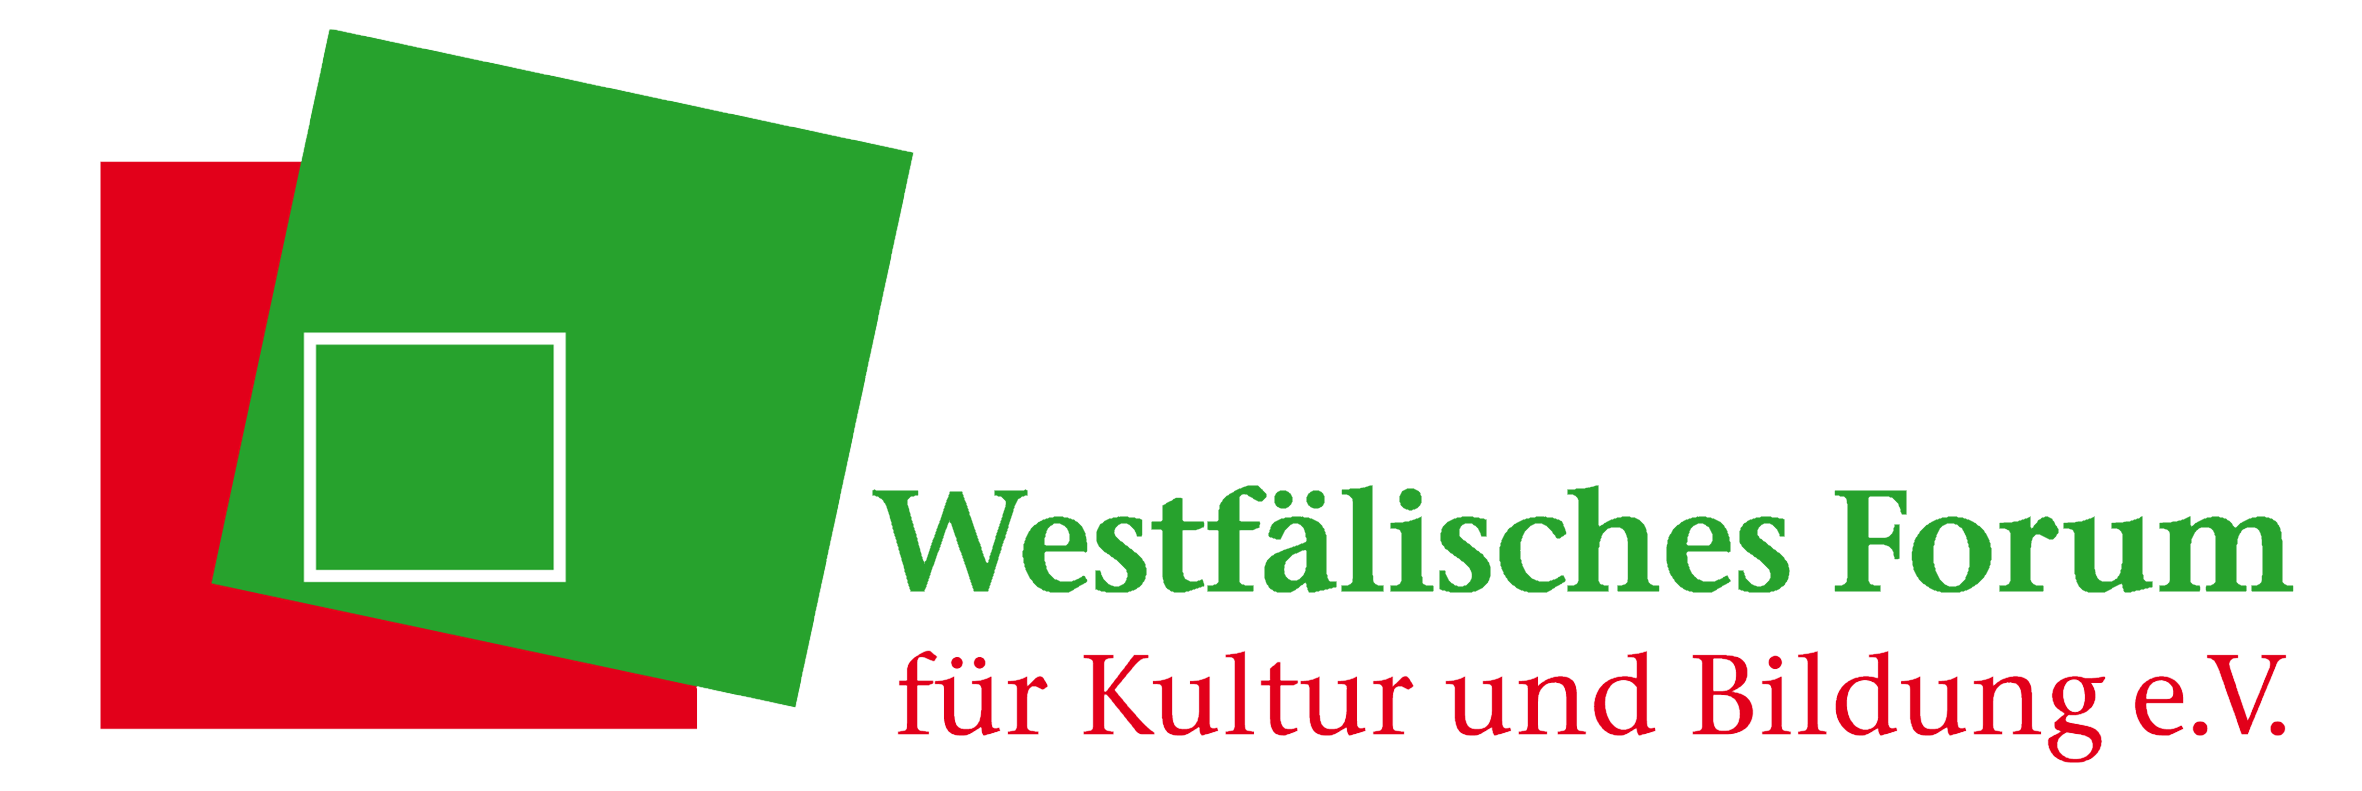 Westfaelisches Forum fuer Kultur und Bildung e. V.